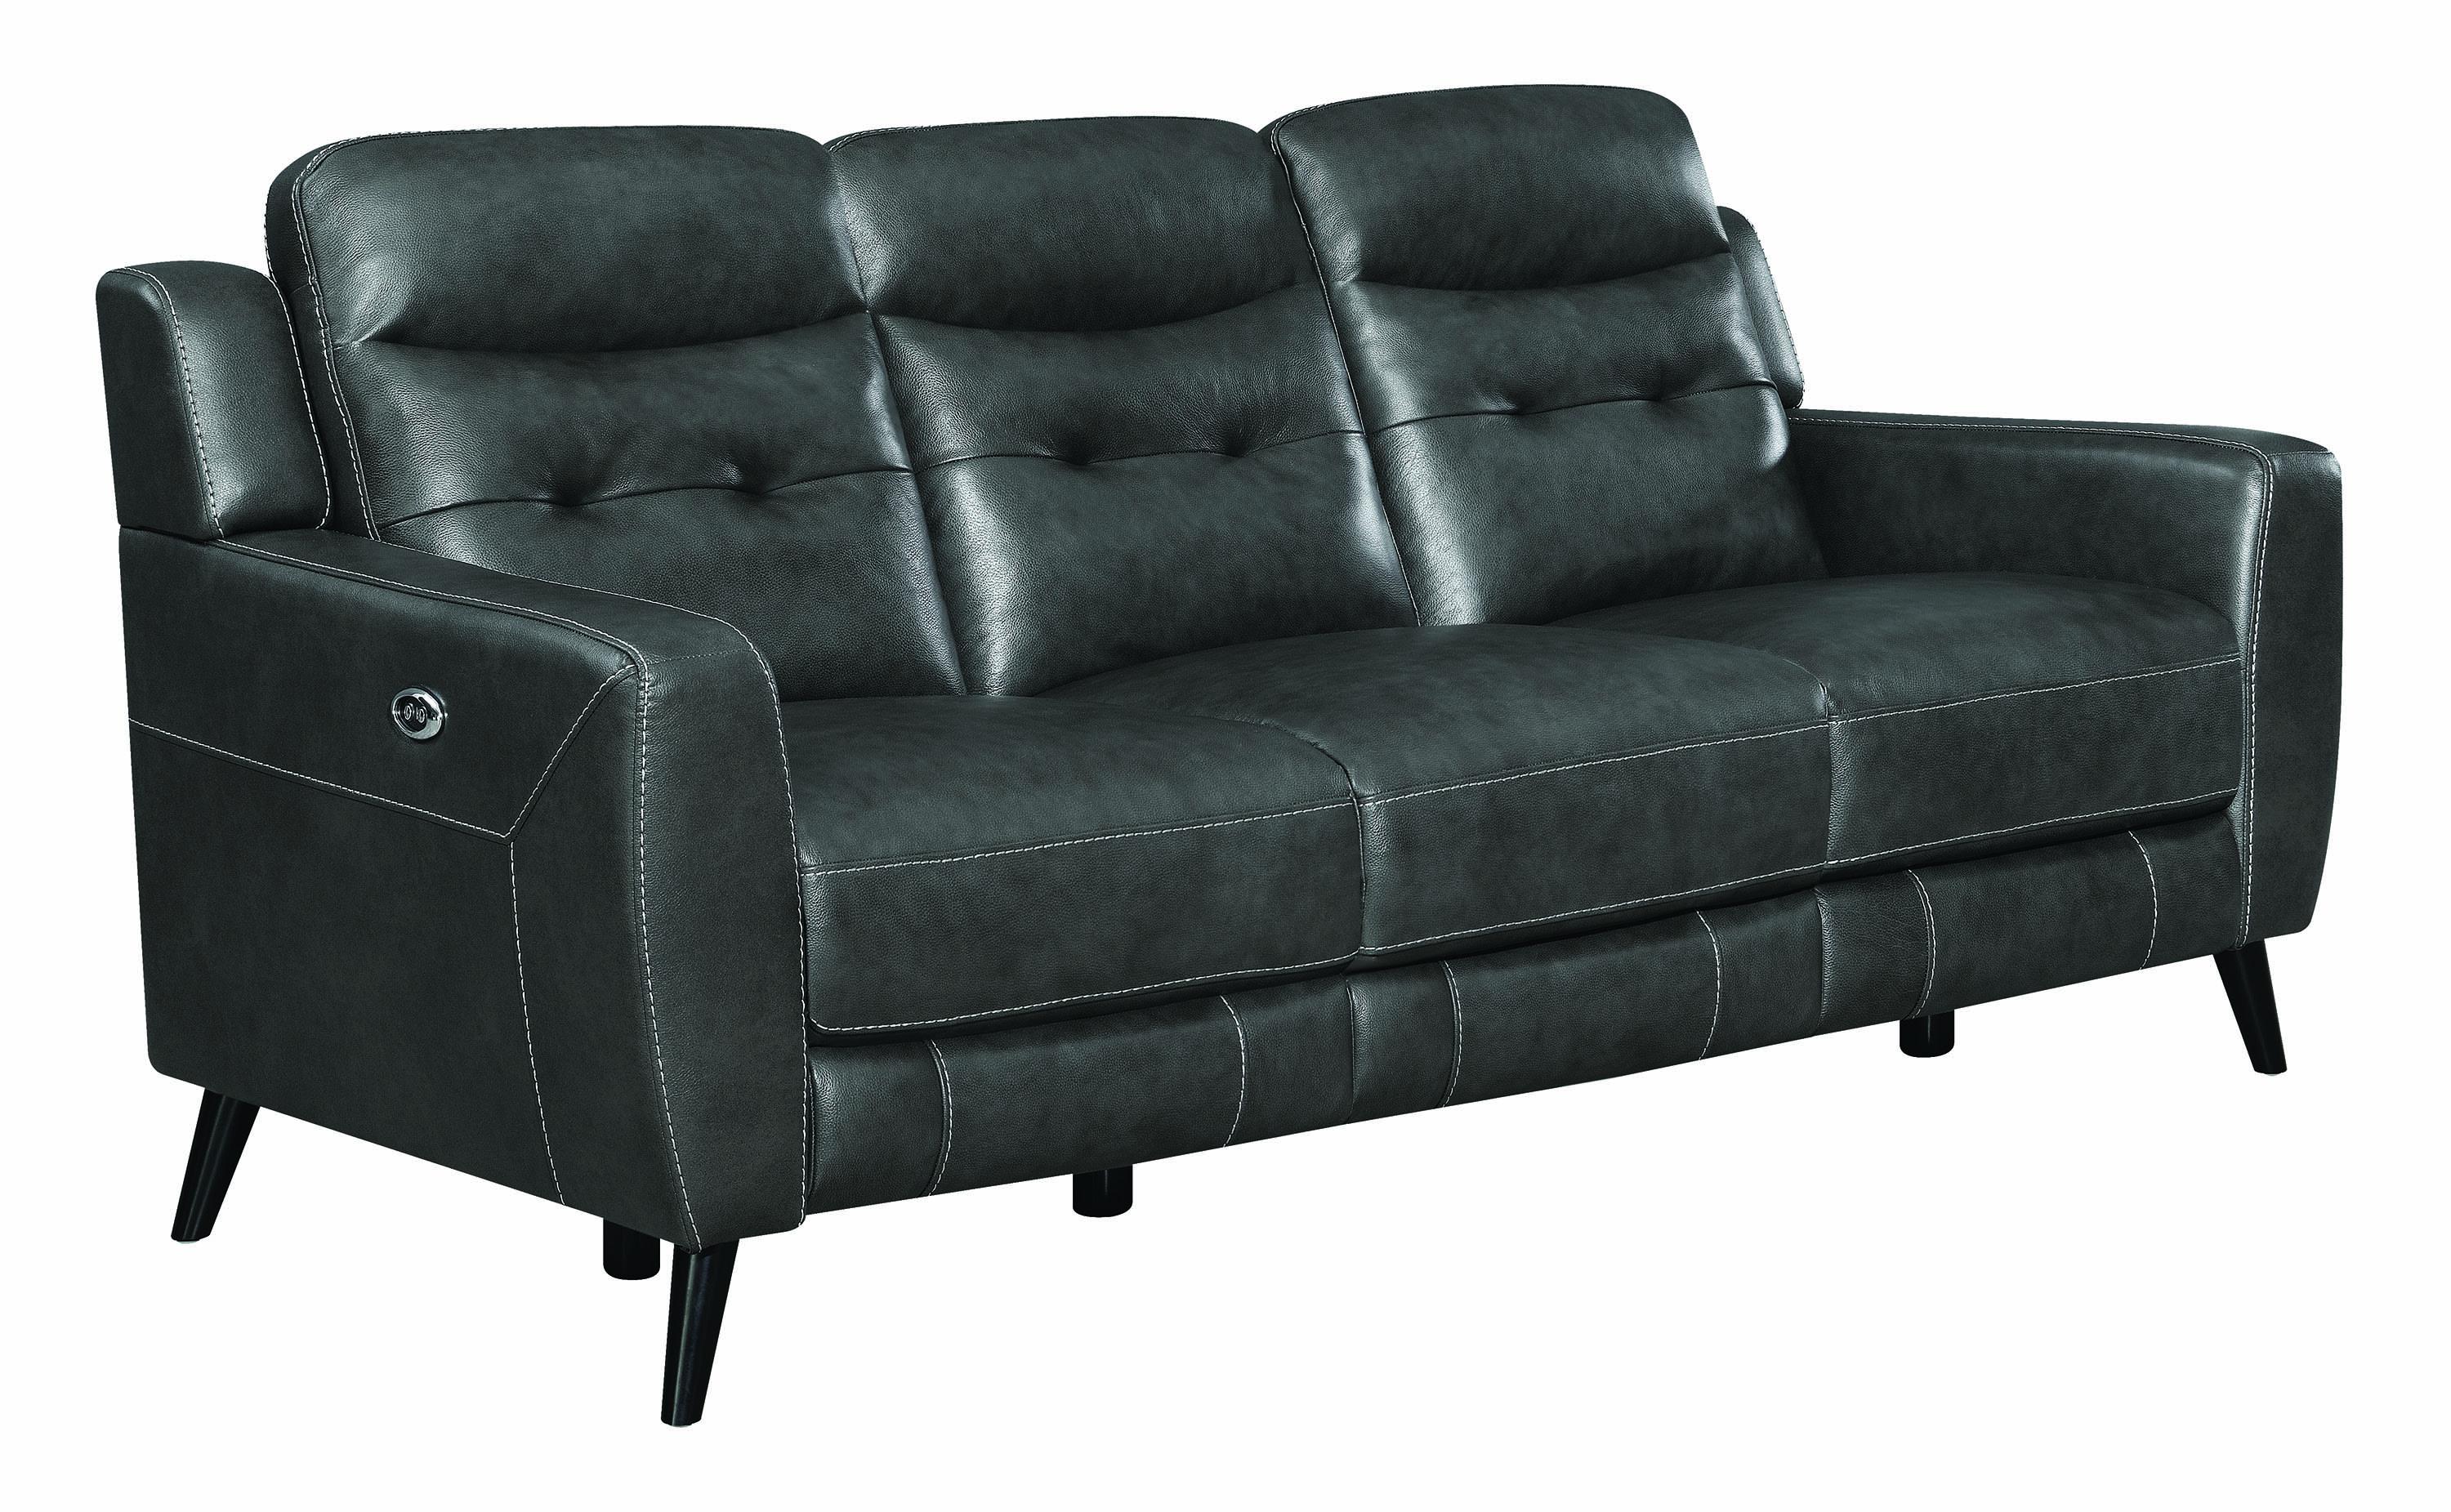 

    
Coaster Lantana Power sofa Gray 603384P
